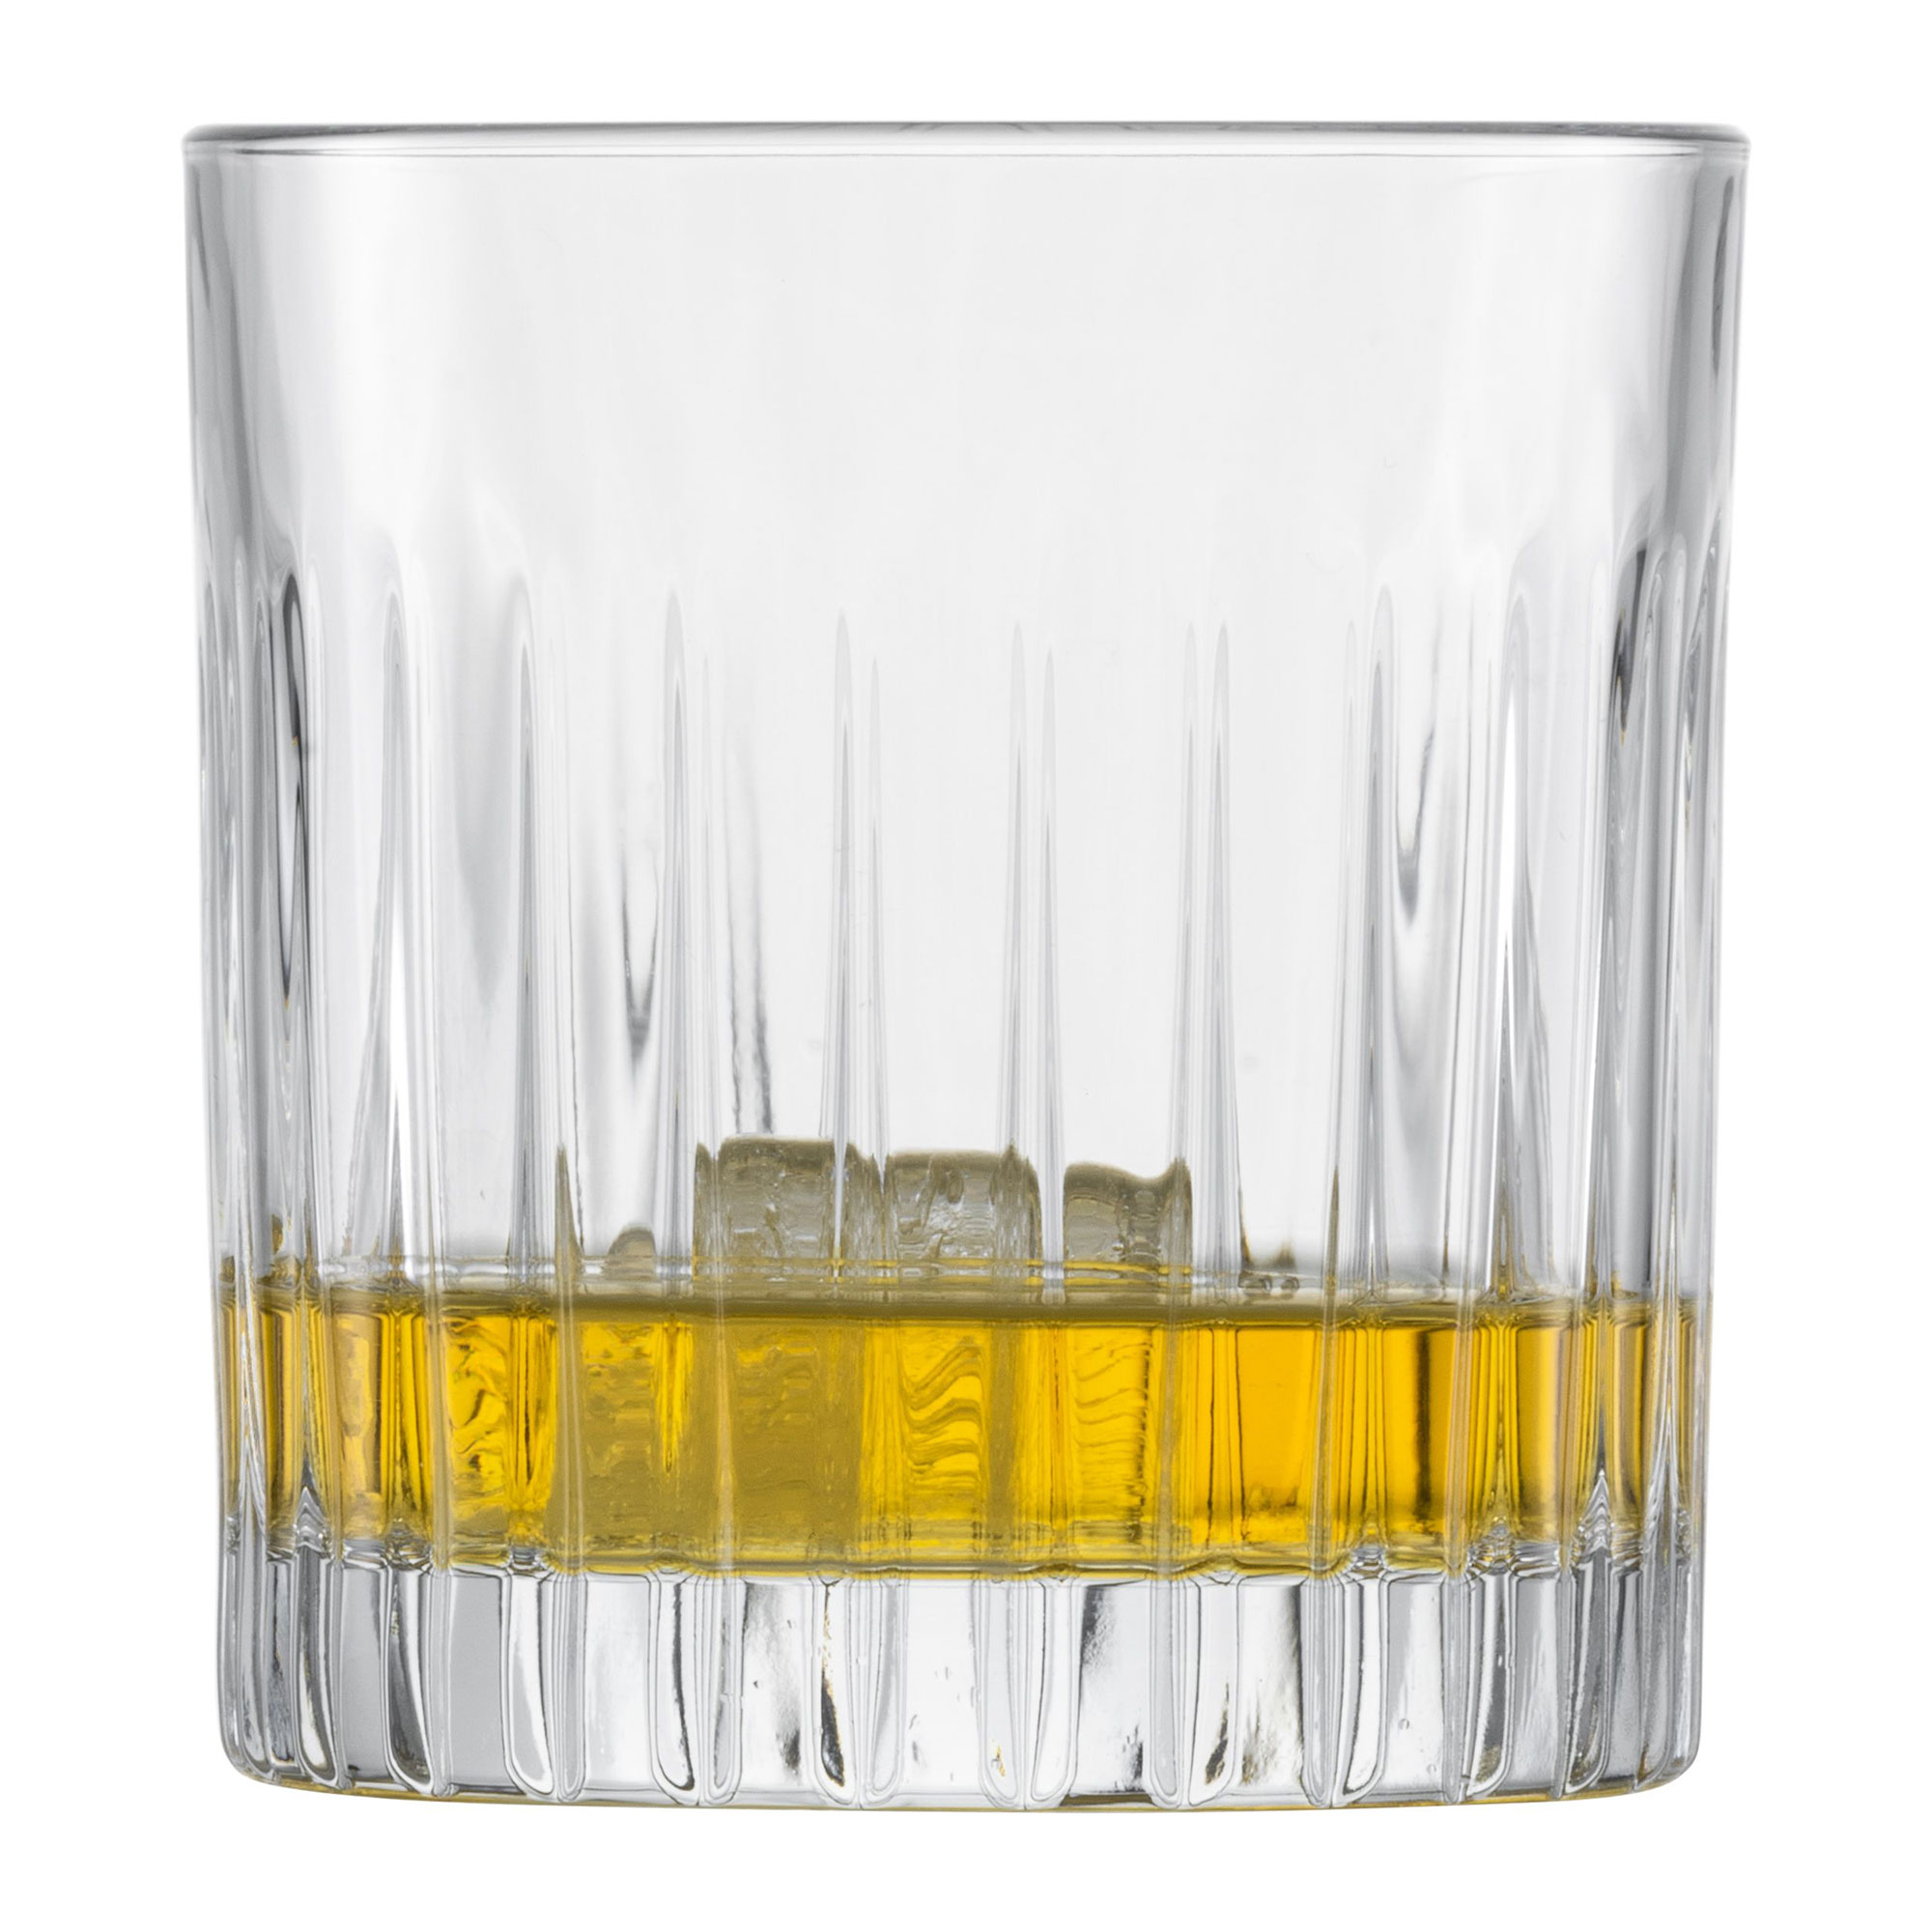 Stage 4er Whiskyglas